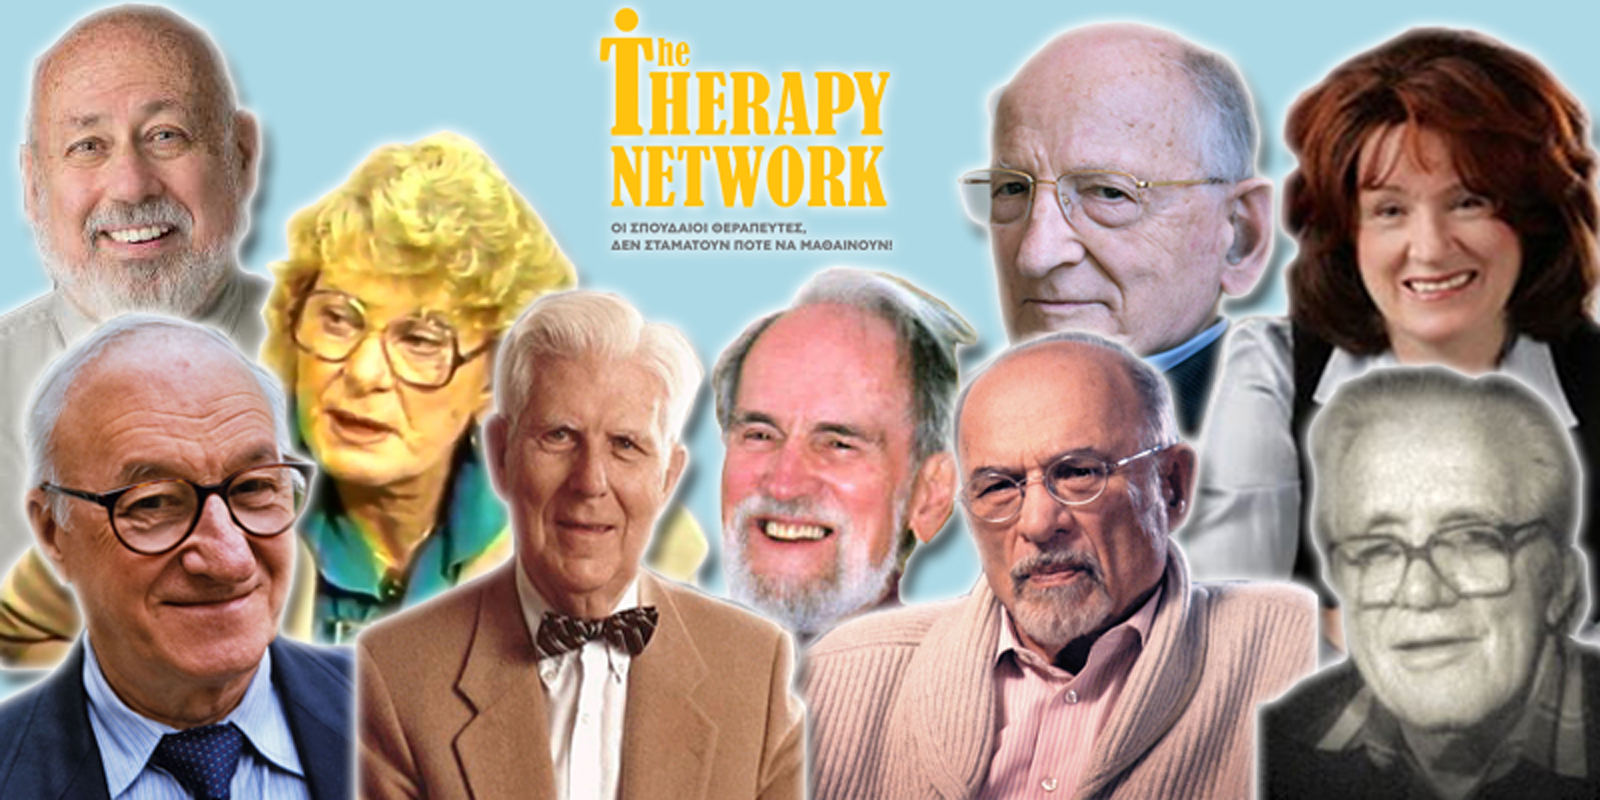 λογότυπο therapy network με ψυχοθεραπευτές